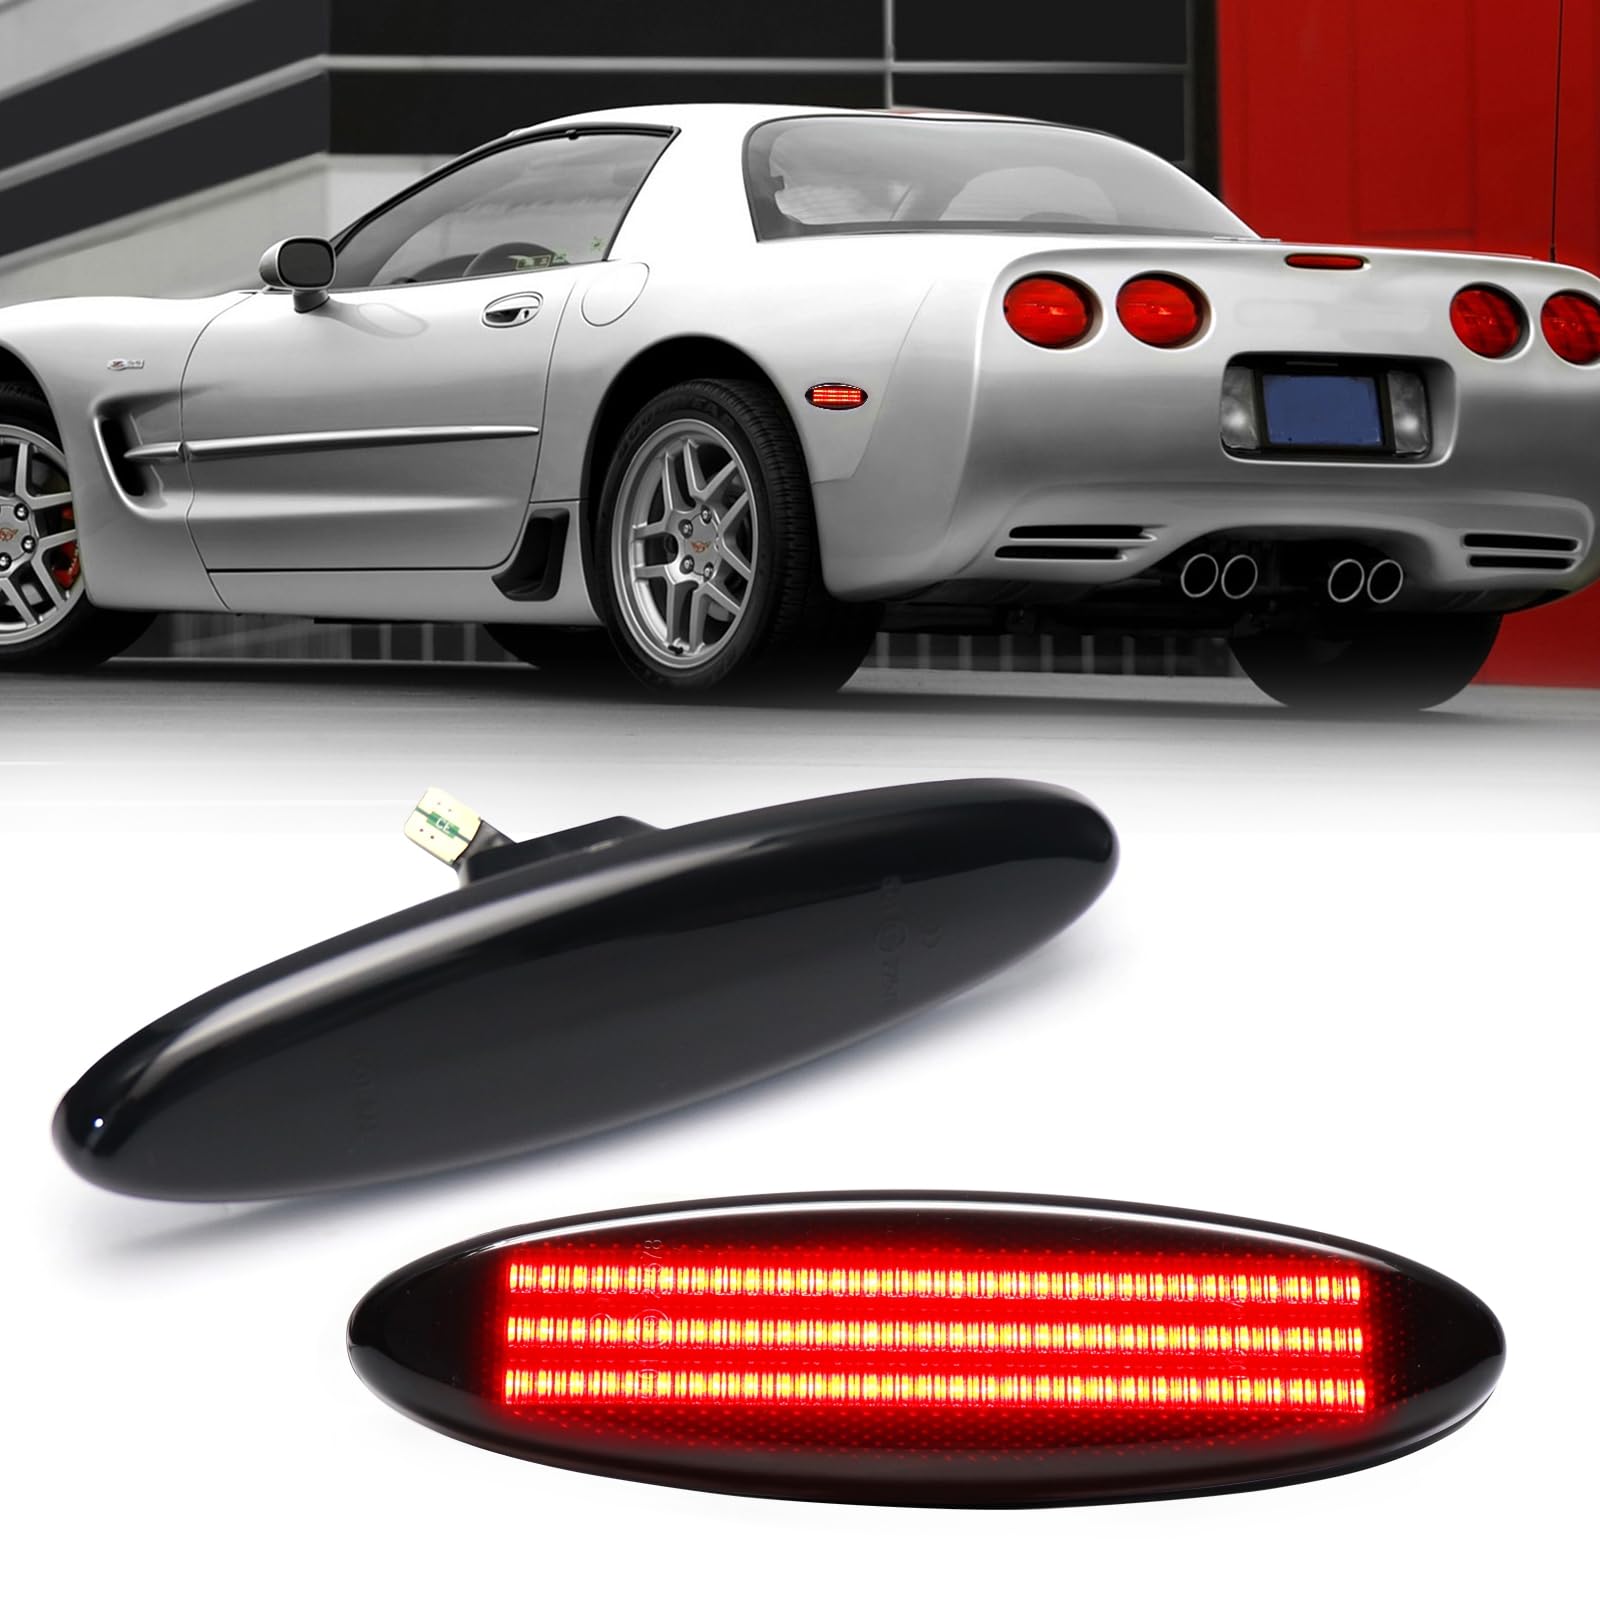 LED Seitenmarkierungsleuchten Ersatz für Chevy Chevrolet Corvette C5 Z06 1997 1998 1999 2000 2001 2002 2003 2004, Rote Voll-LED Seitenmarkierungsleuchten Stoßstangenblinker, geräucherte Linse von FetonAuto